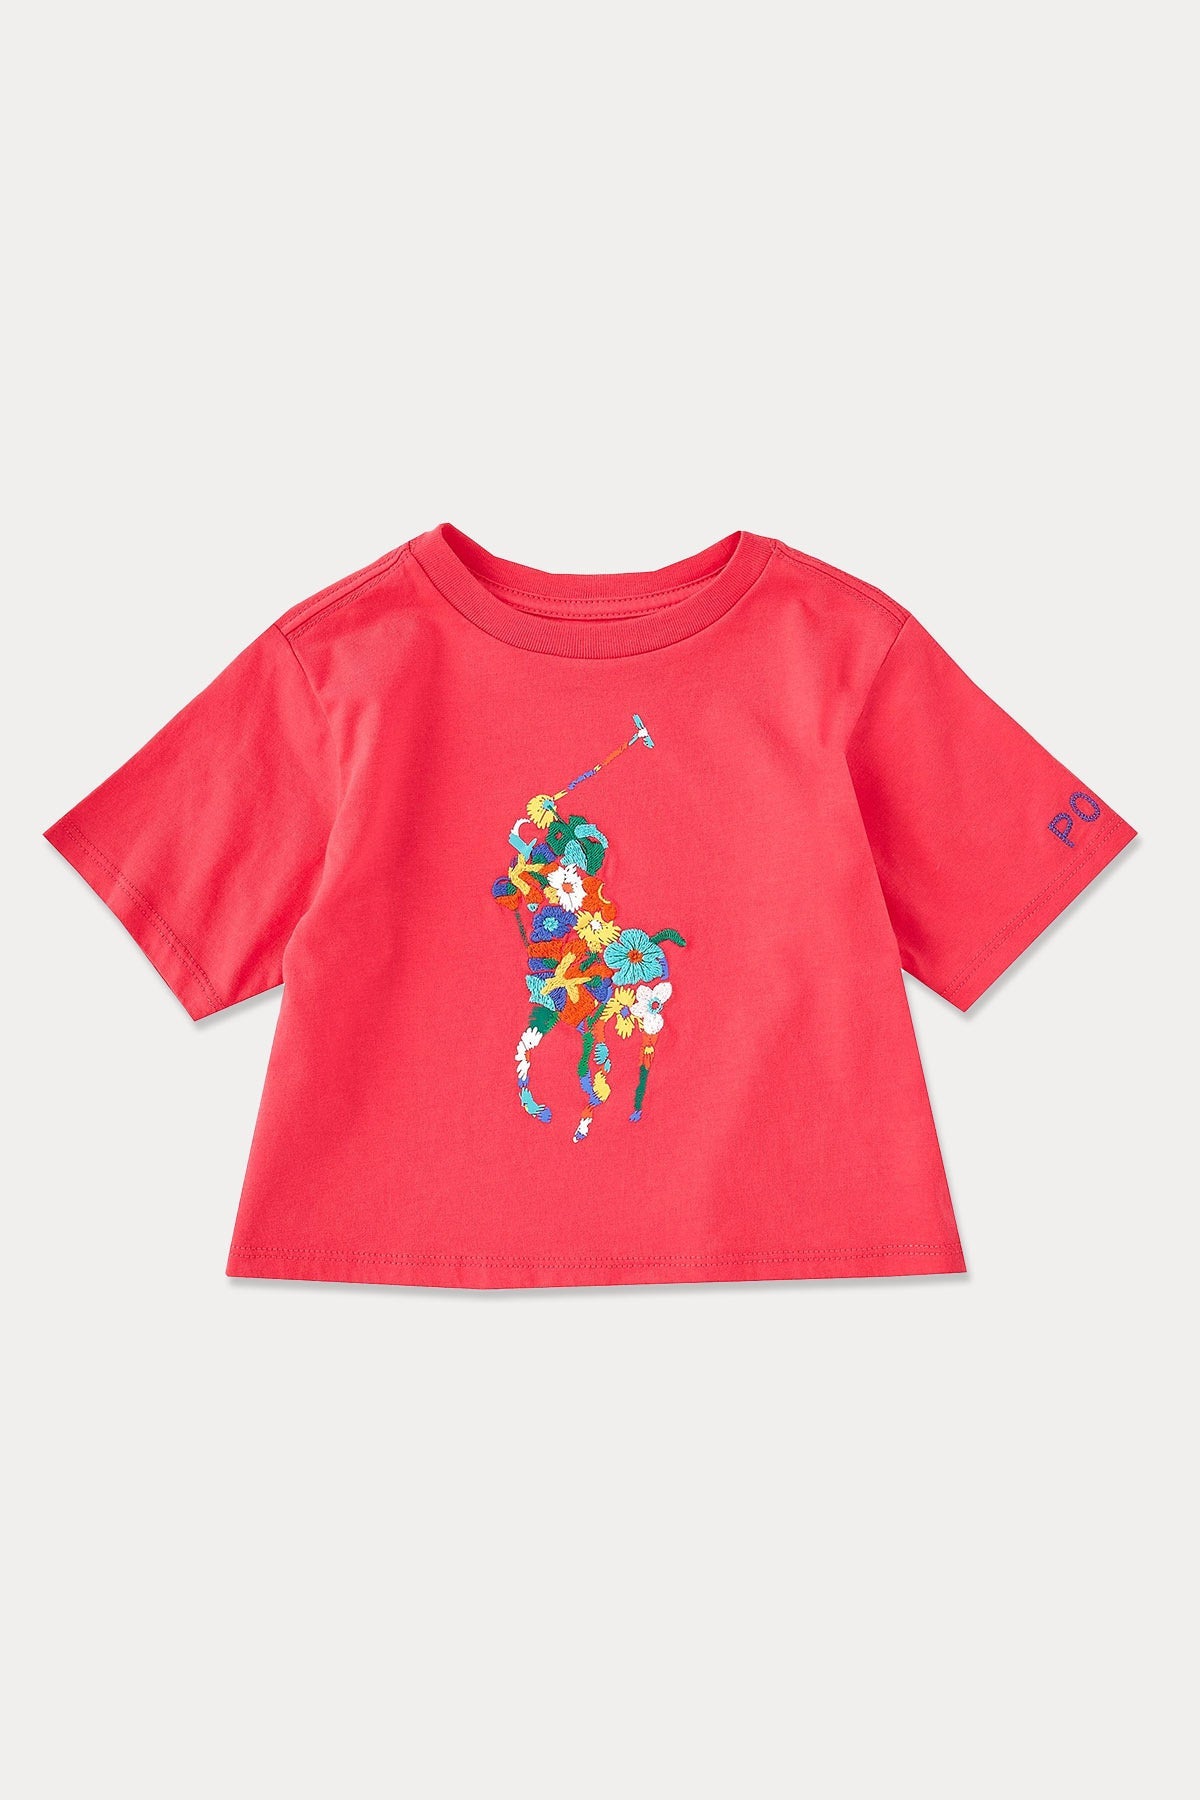 Polo Ralph Lauren Kids 2-5 Yaş Kız Çocuk Big Pony Logolu T-shirt